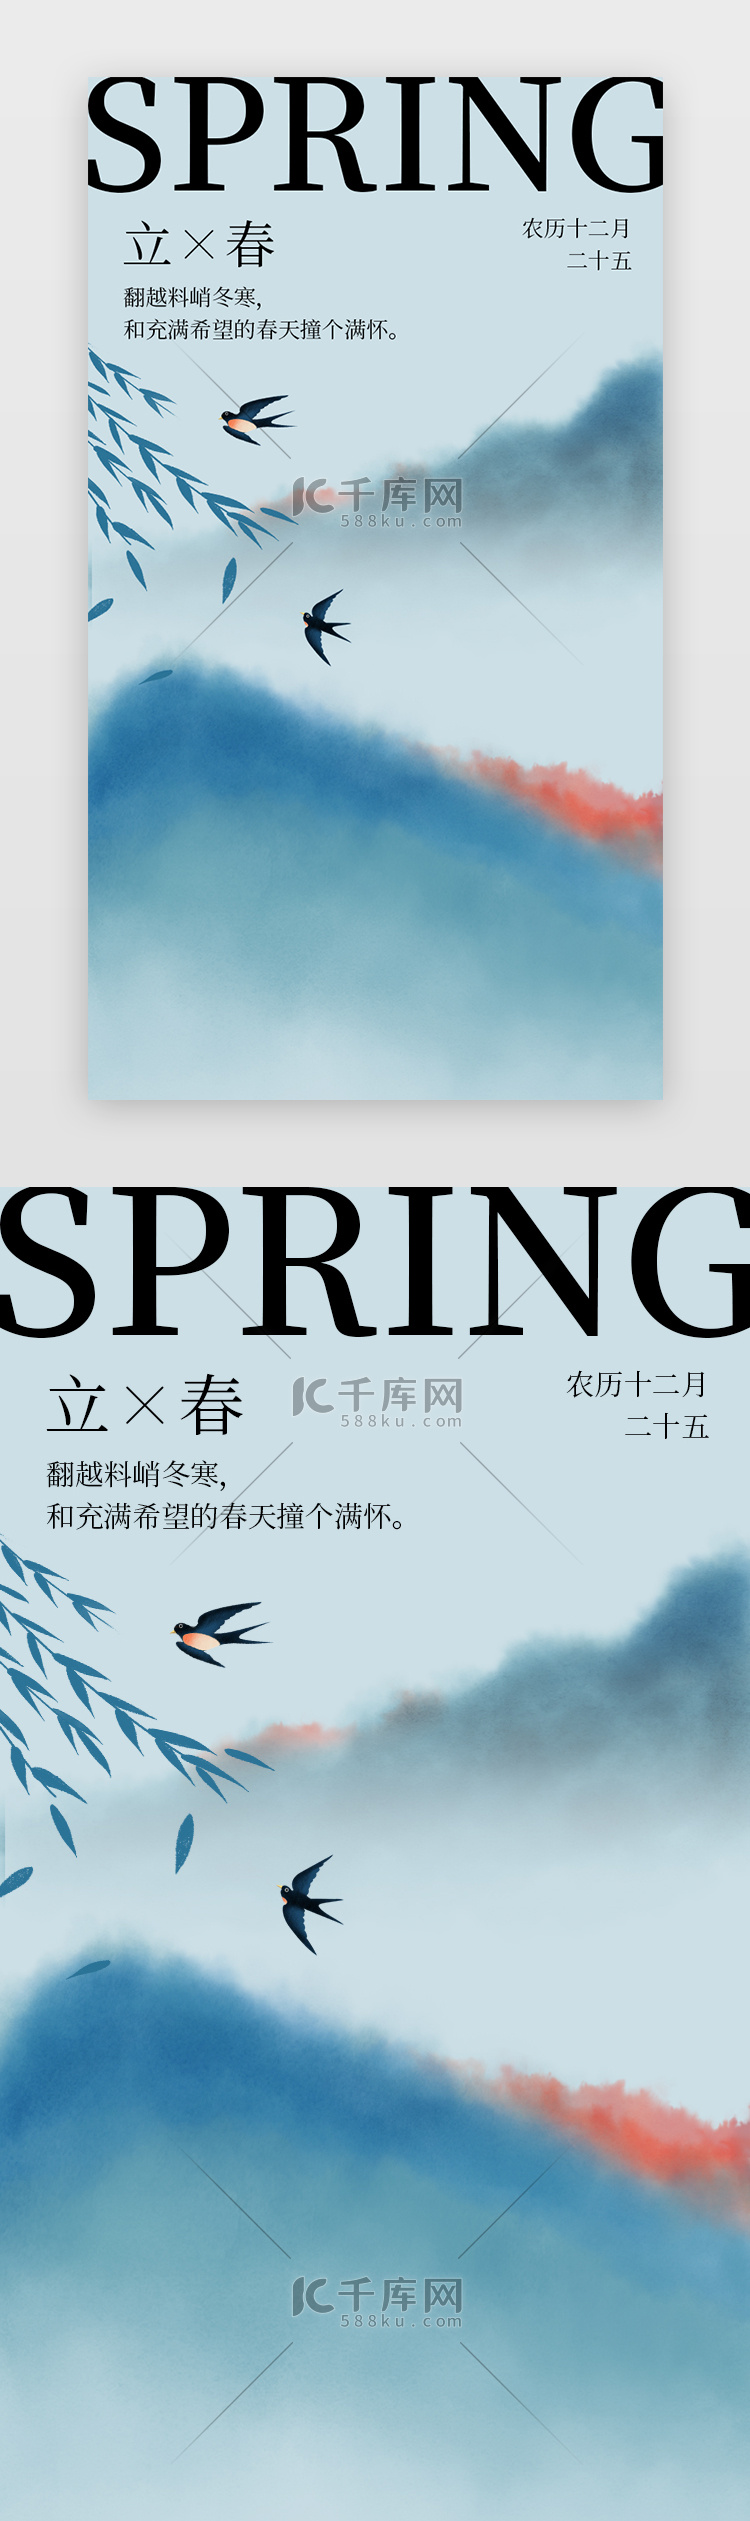 节气立春海报中国风插画青色山